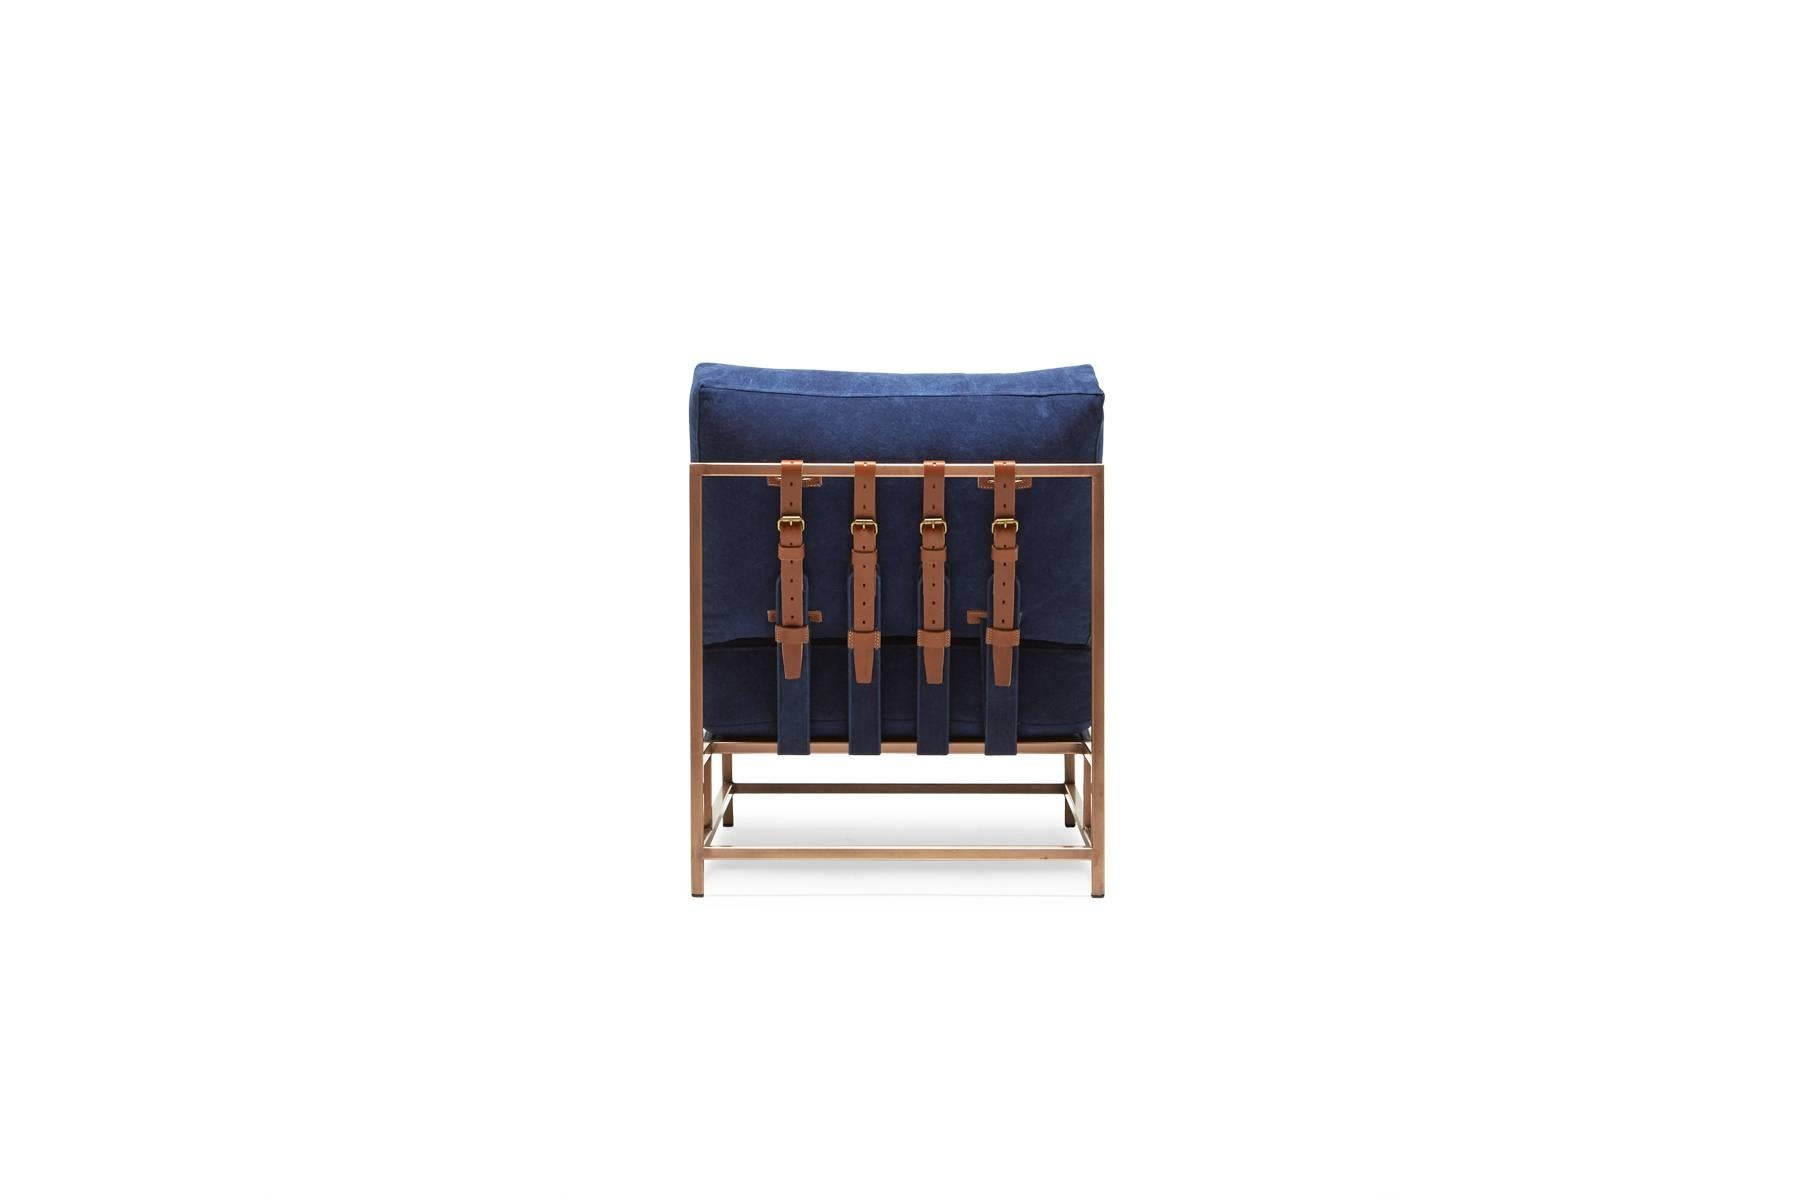 Américain IHand-Dyed Indigo Canvas and Antique Copper Chair (Toile indigo teintée à la main et chaise en cuivre antique) en vente